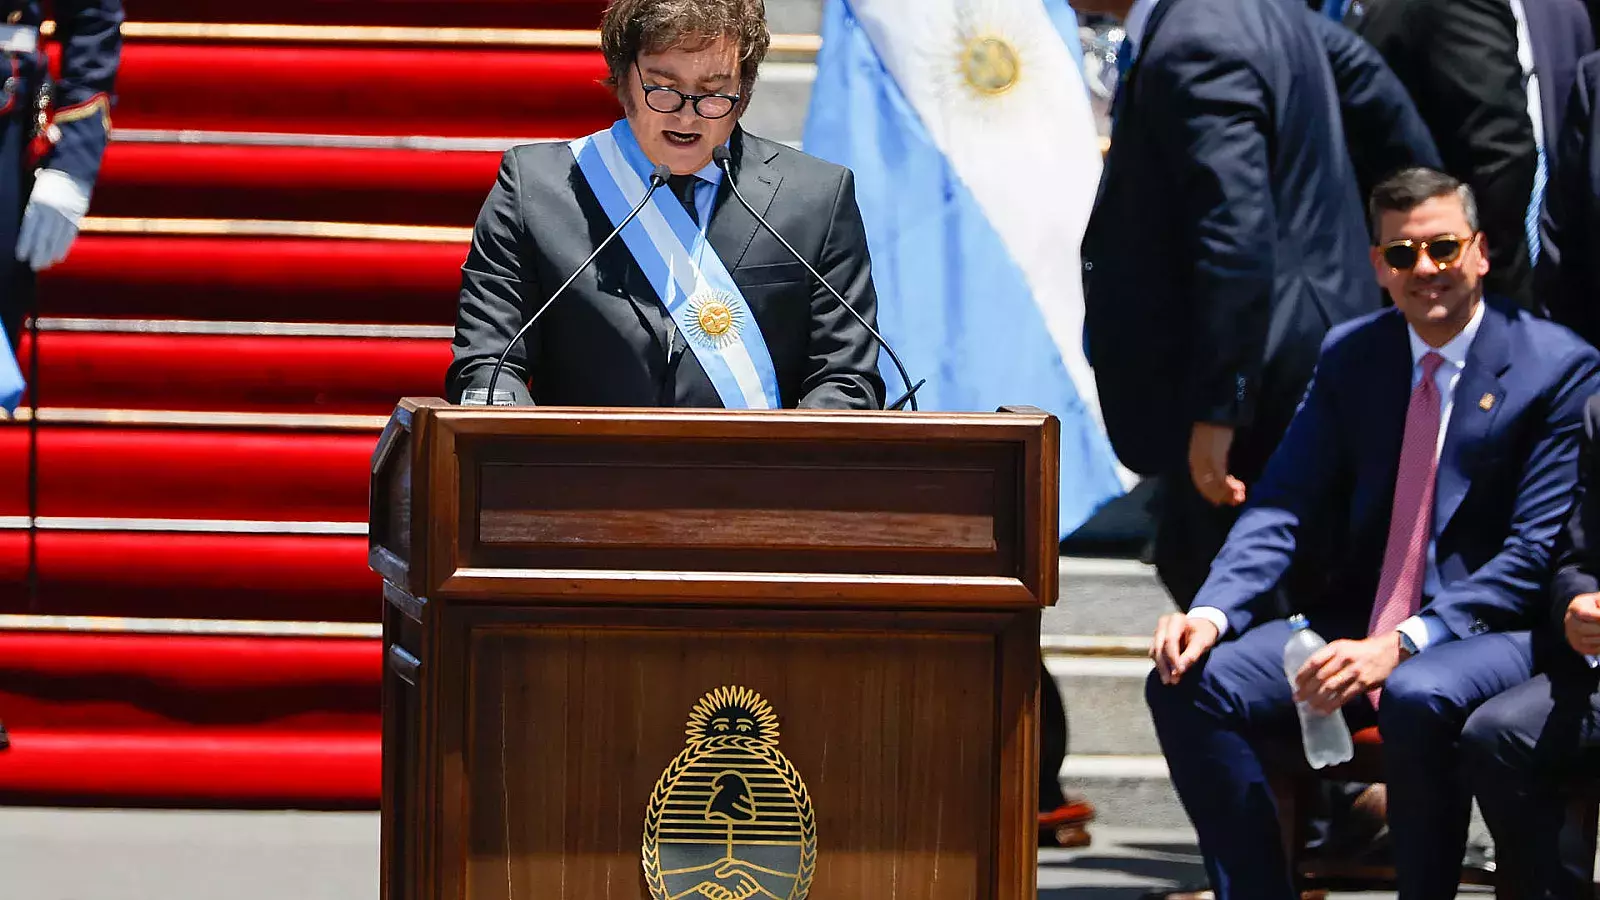 Milei jura como presidente: nueva era para Argentina con un discurso de cambio radical